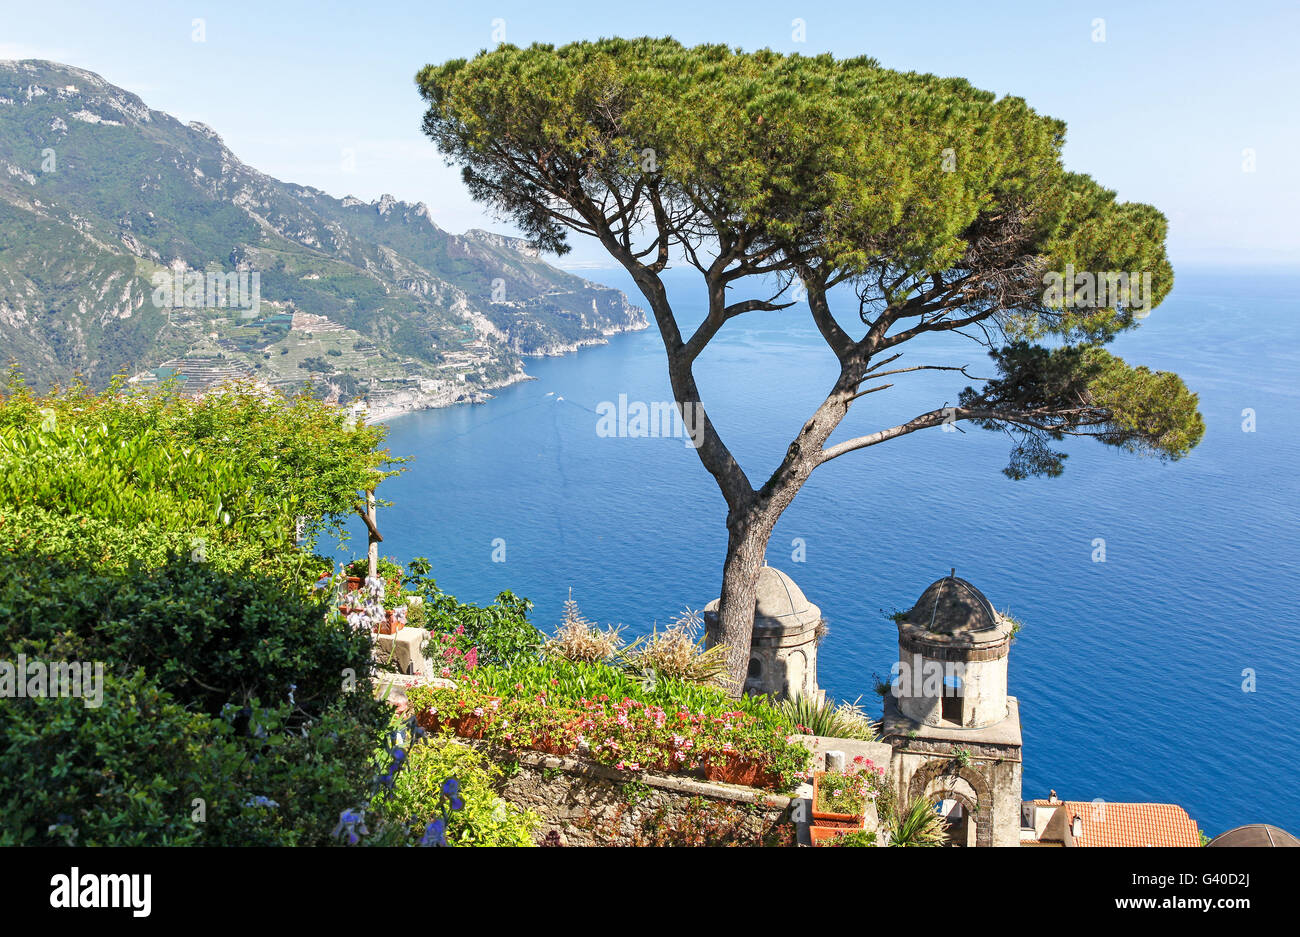 Vue sur la côte amalfitaine depuis les jardins de la Villa Rufolo, Ravello, côte amalfitaine, Italie, Europe Banque D'Images